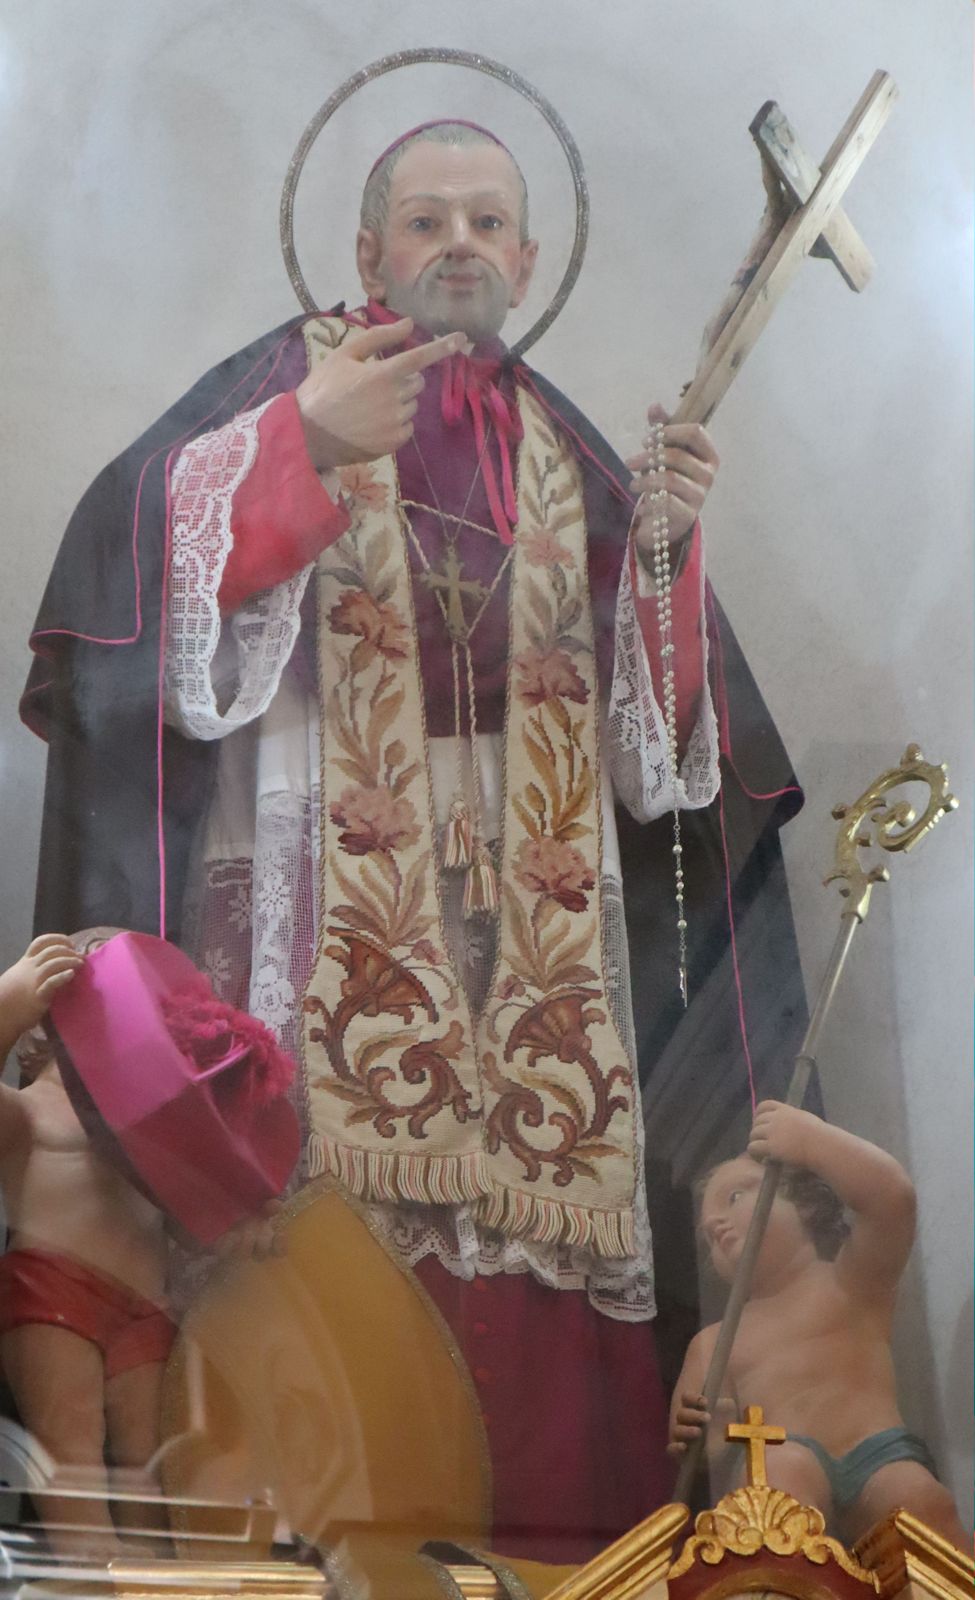 Statue in der Pfarrkirche in Frigento bei Avellino